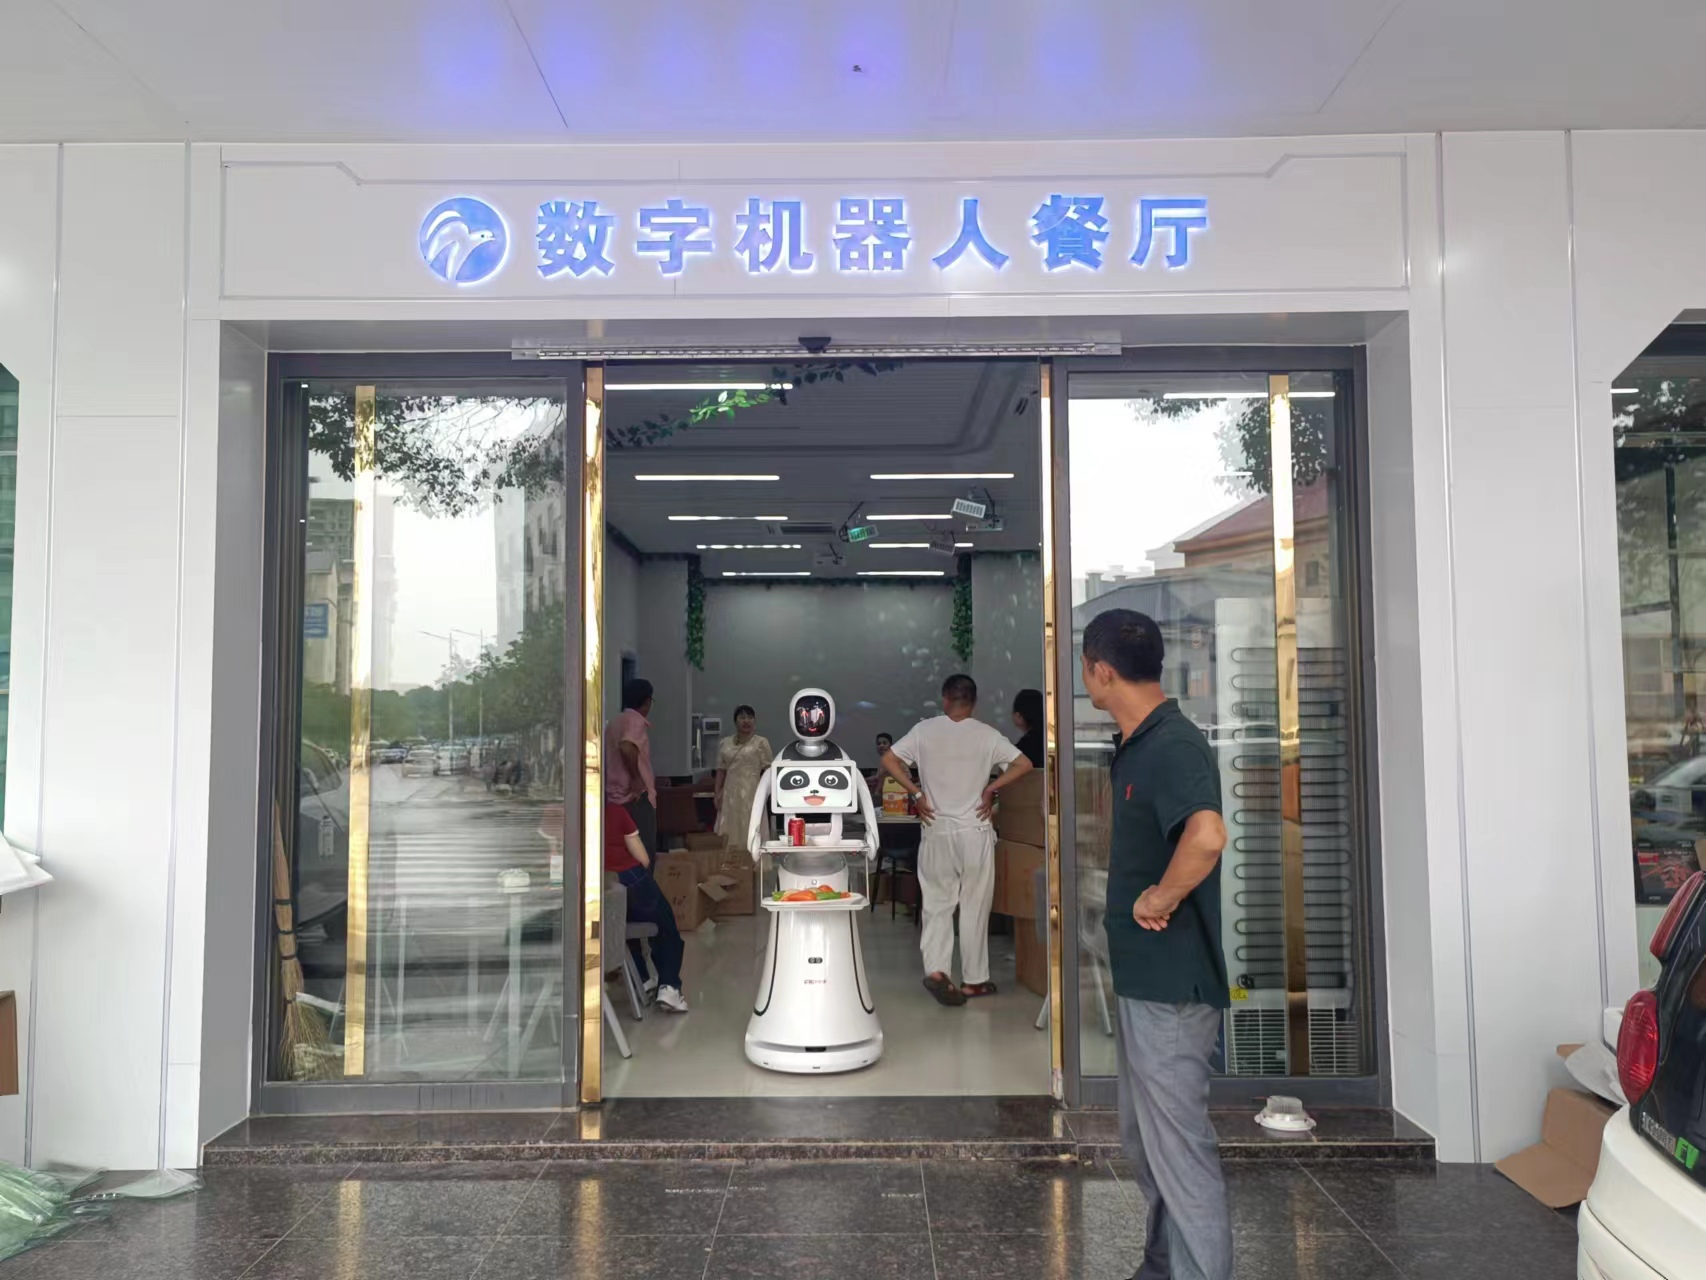 Maaltijdbezorging + welkom twee-in-één robot om een ​​digitaal robotrestaurant te creëren